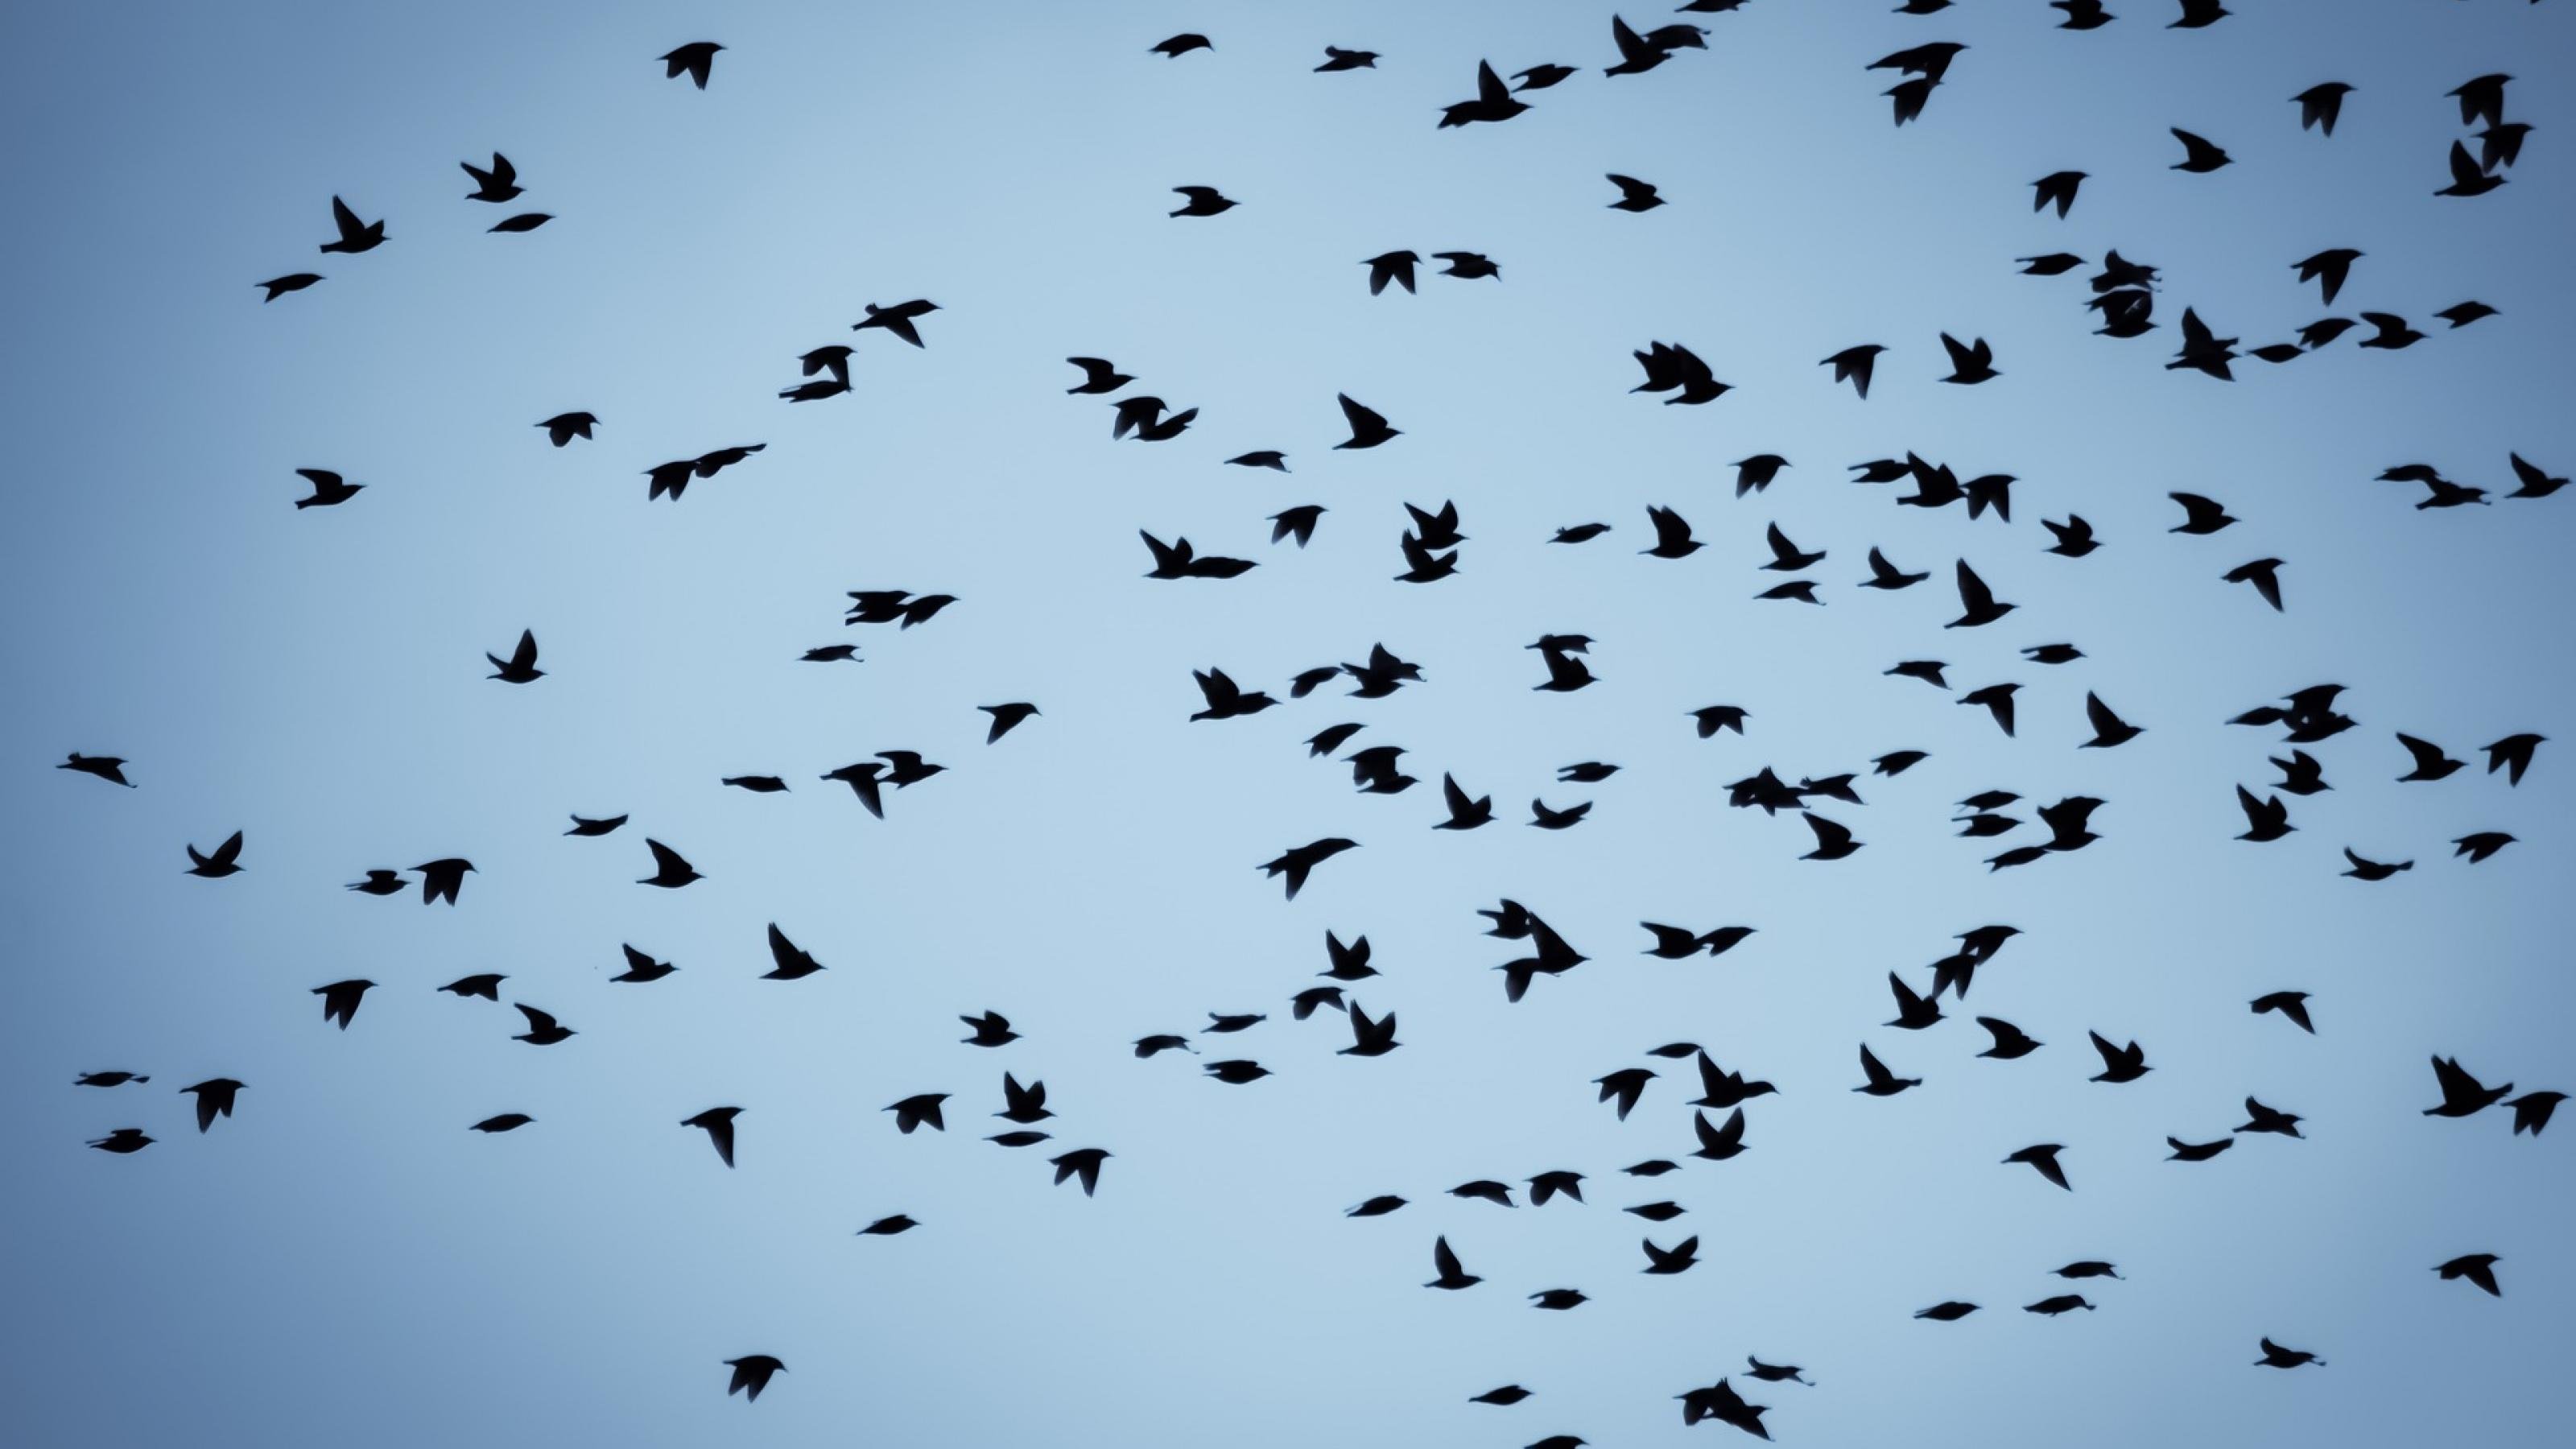 Vögel ziehen als Siluetten vor dem blauen Himmel vorbei.